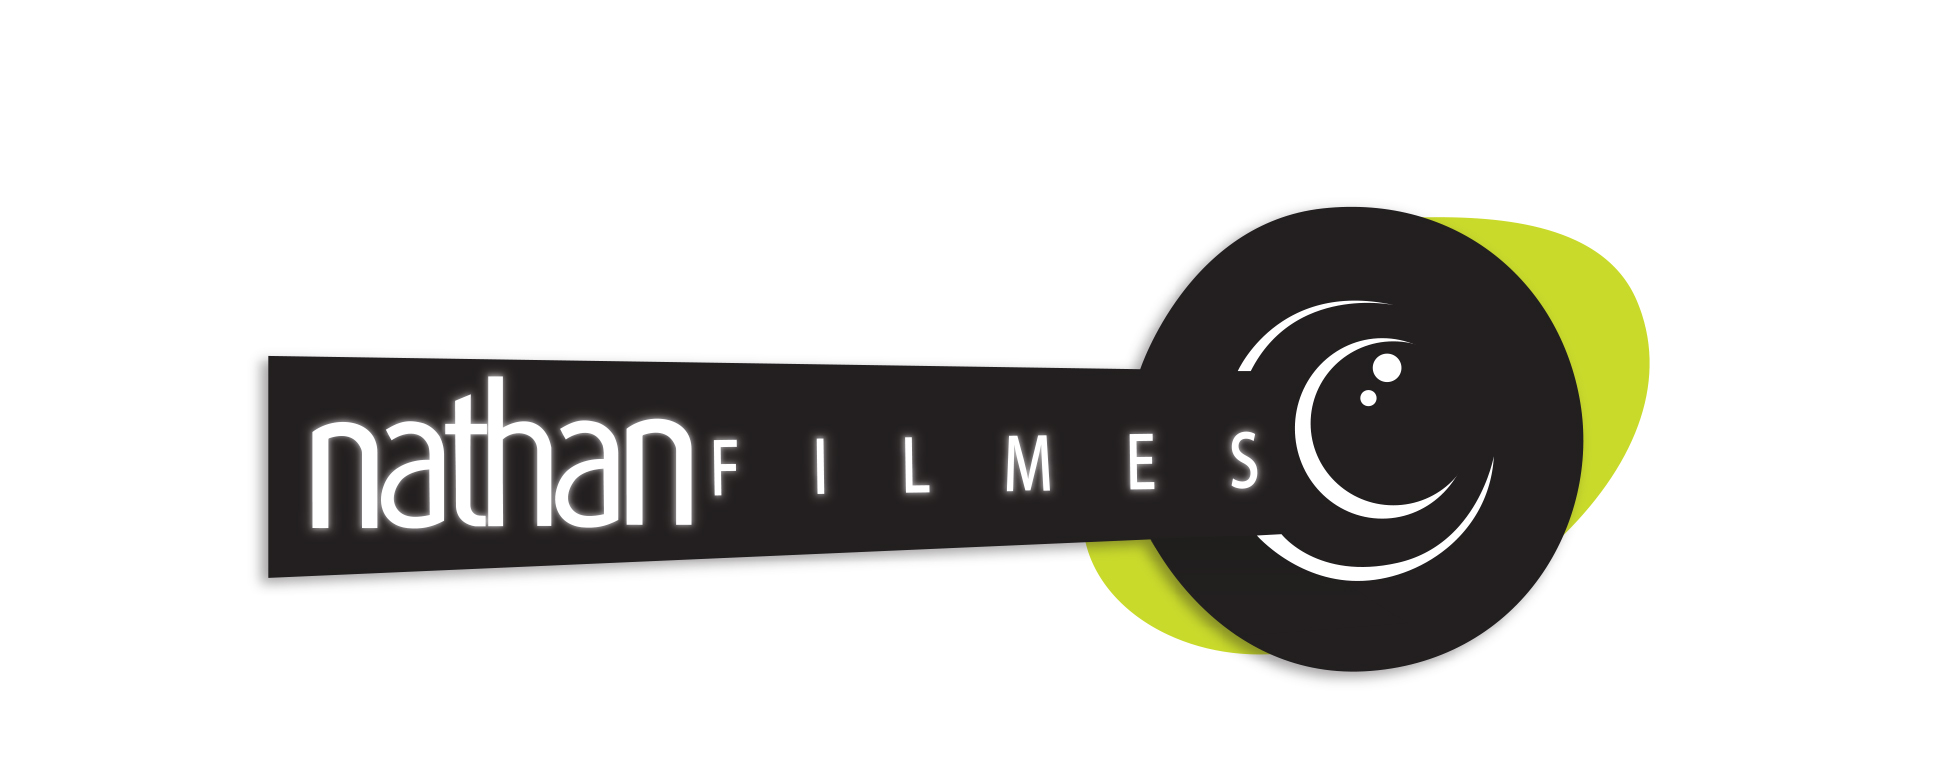 Logomarca de Nathan Filmes - Produtora de Vídeos